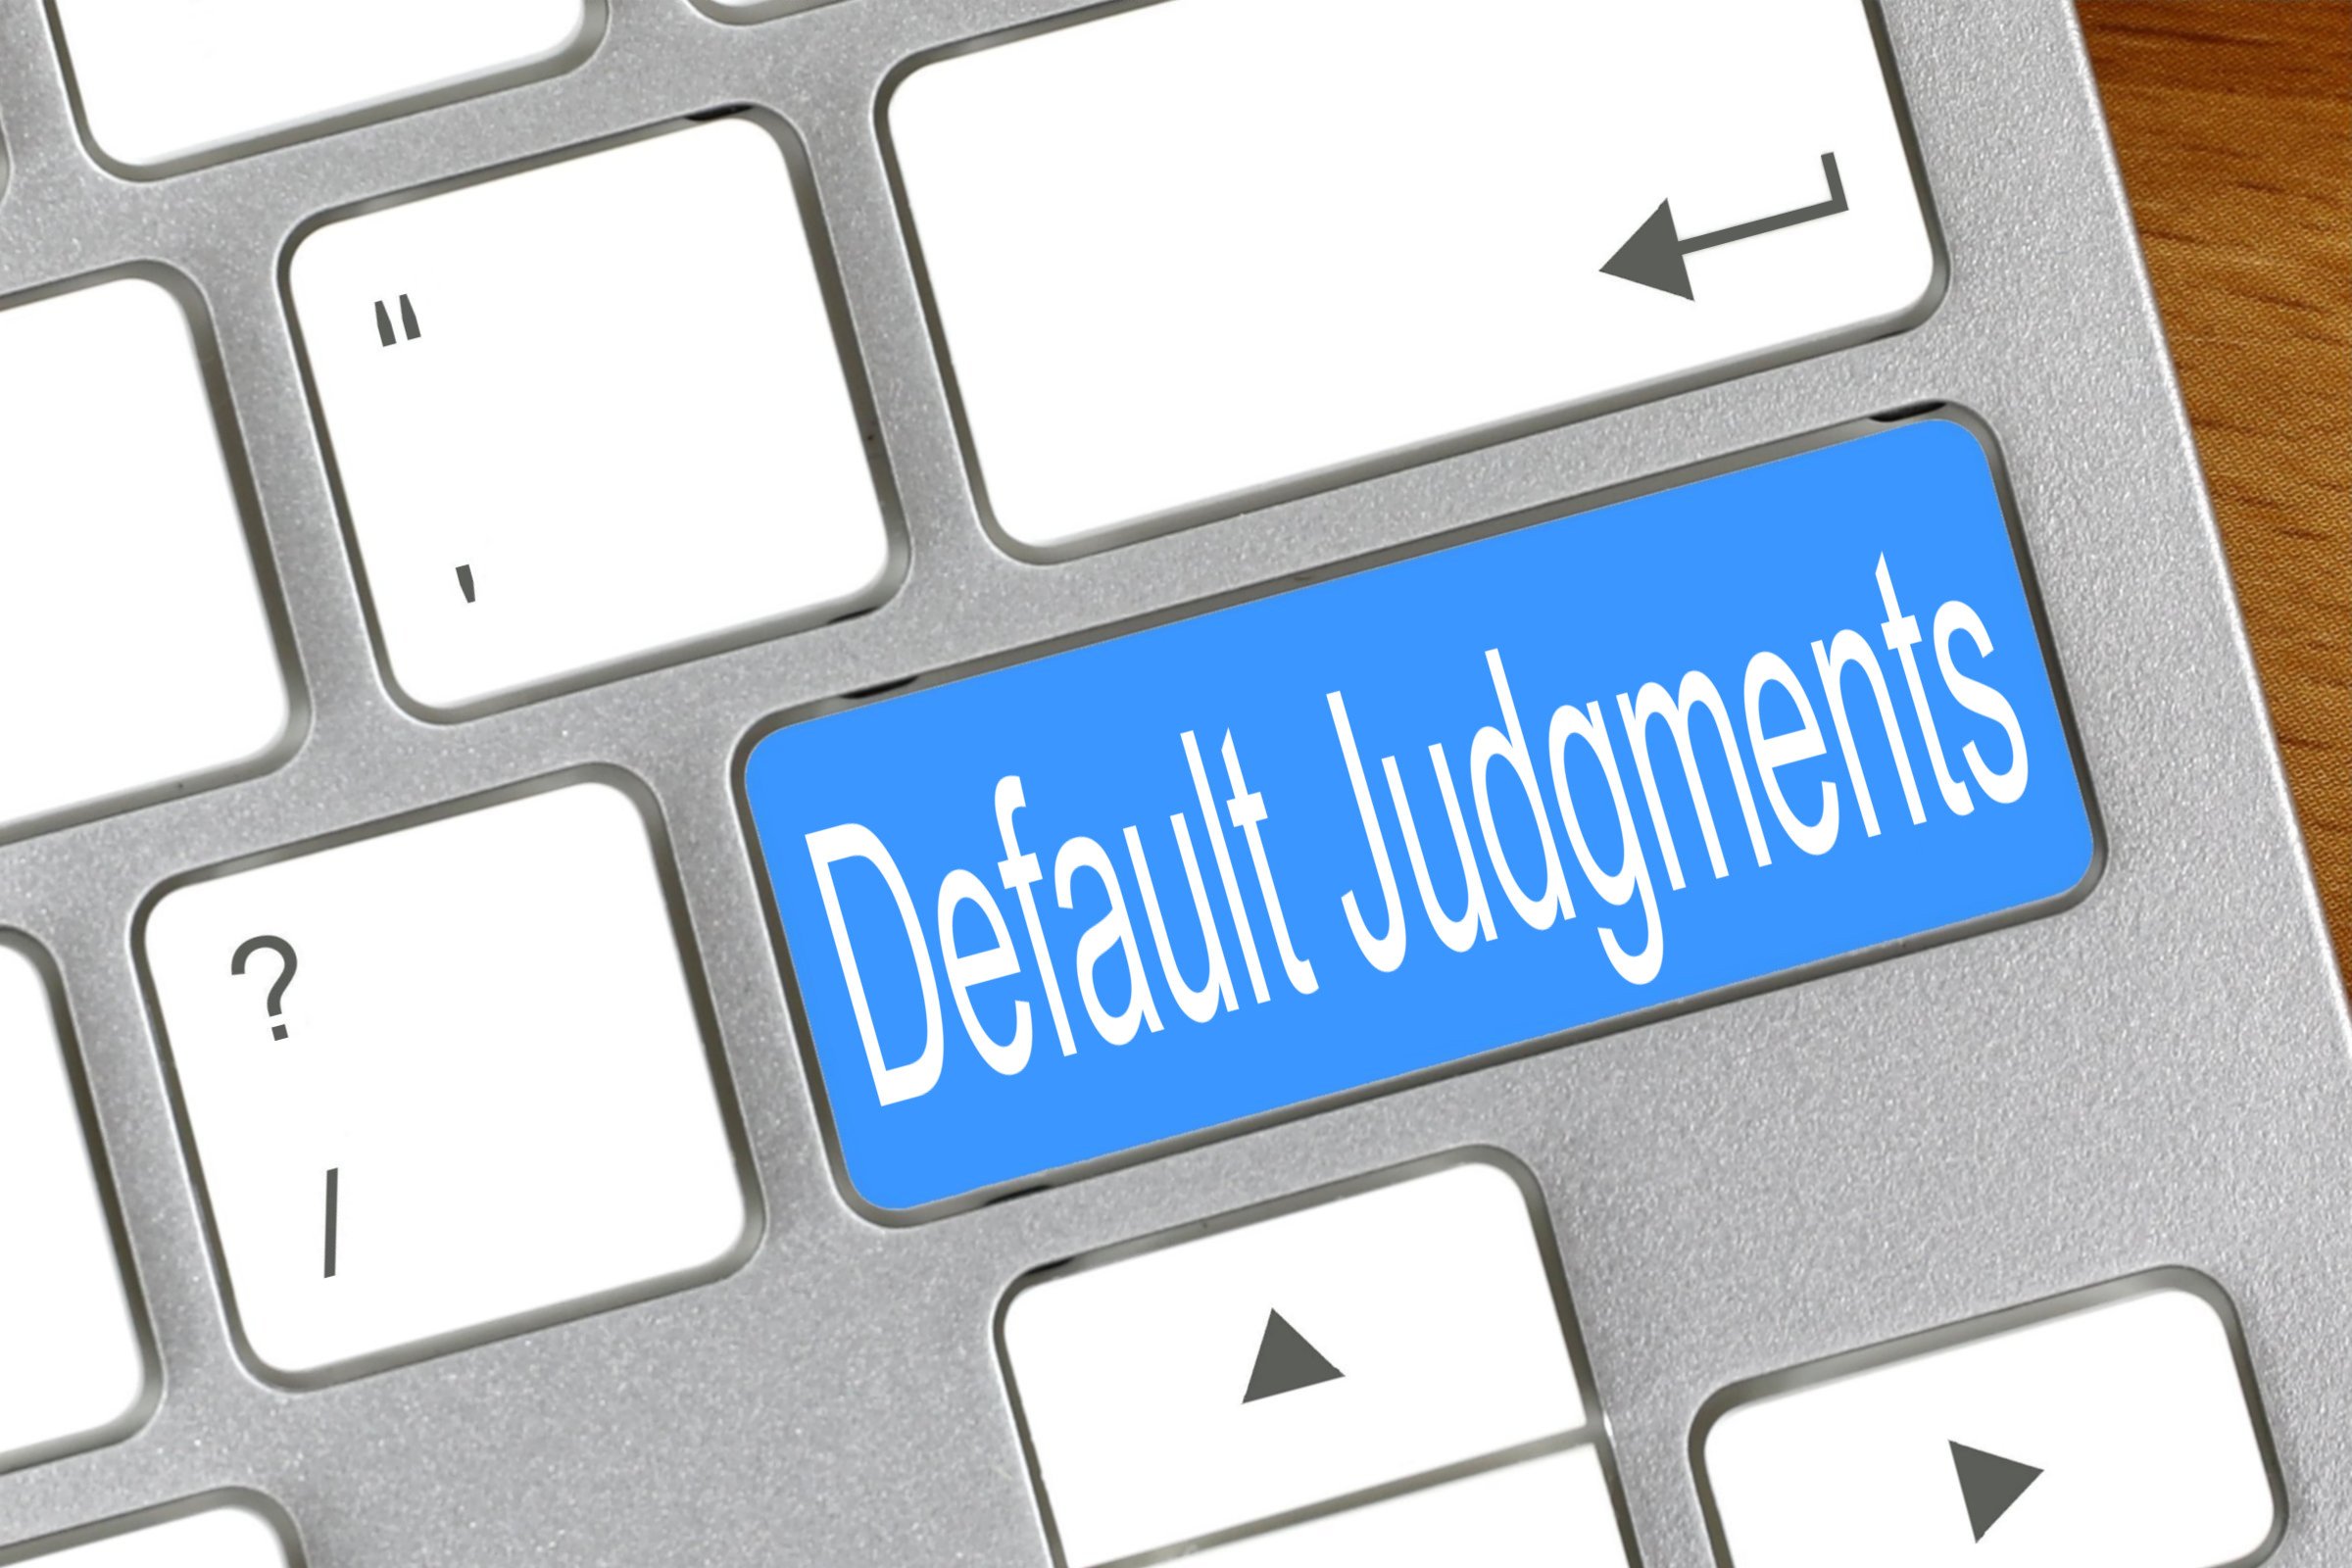 default judgments